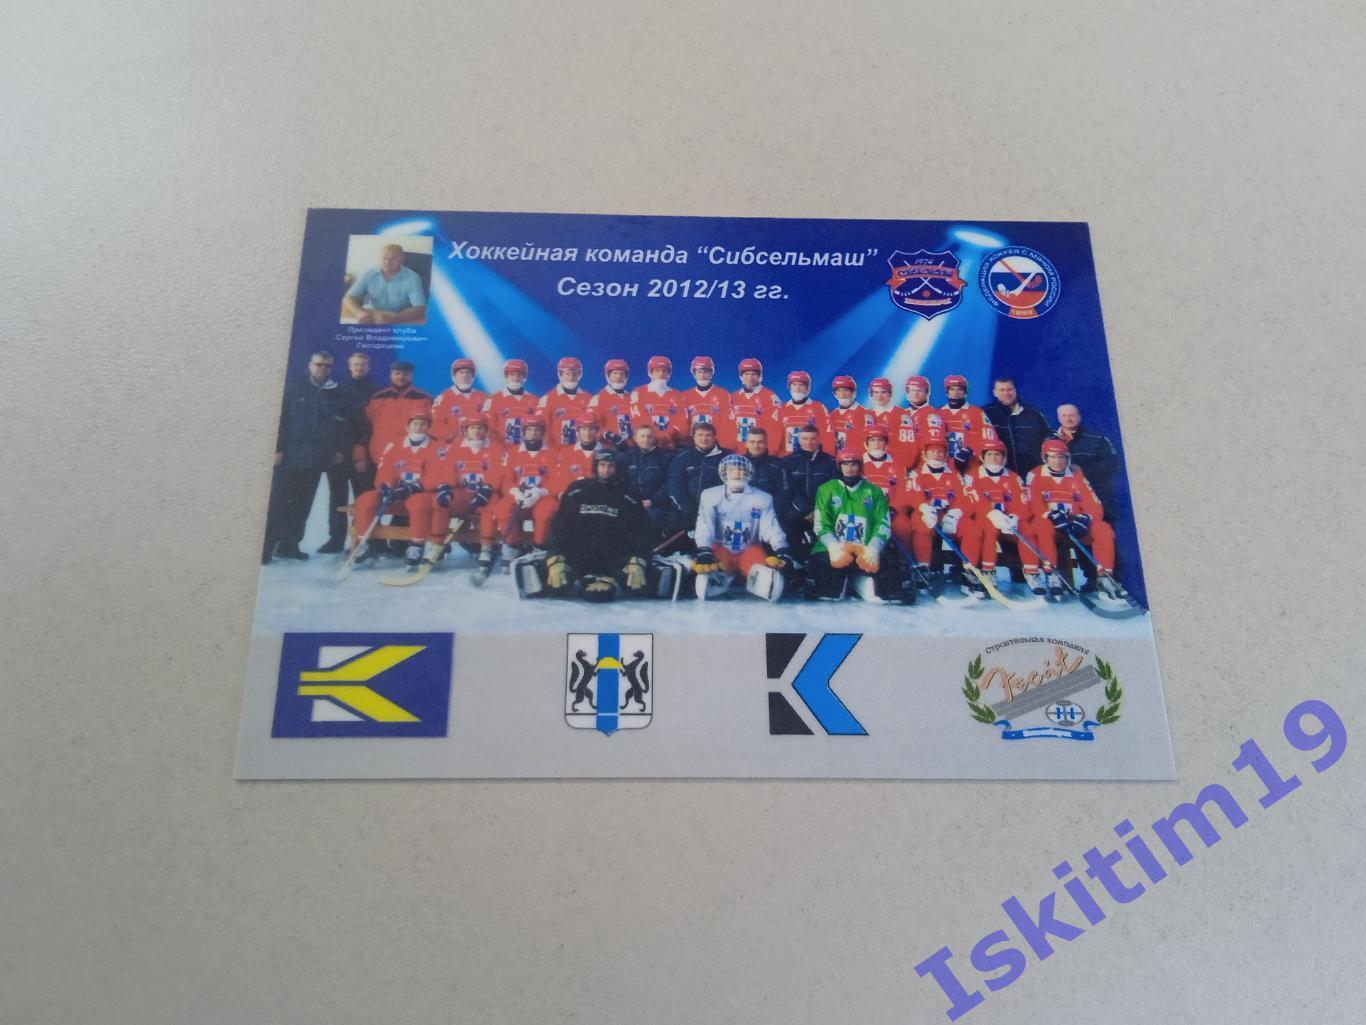 Календарик 2013. Хоккейная команда Сибсельмаш Новосибирск